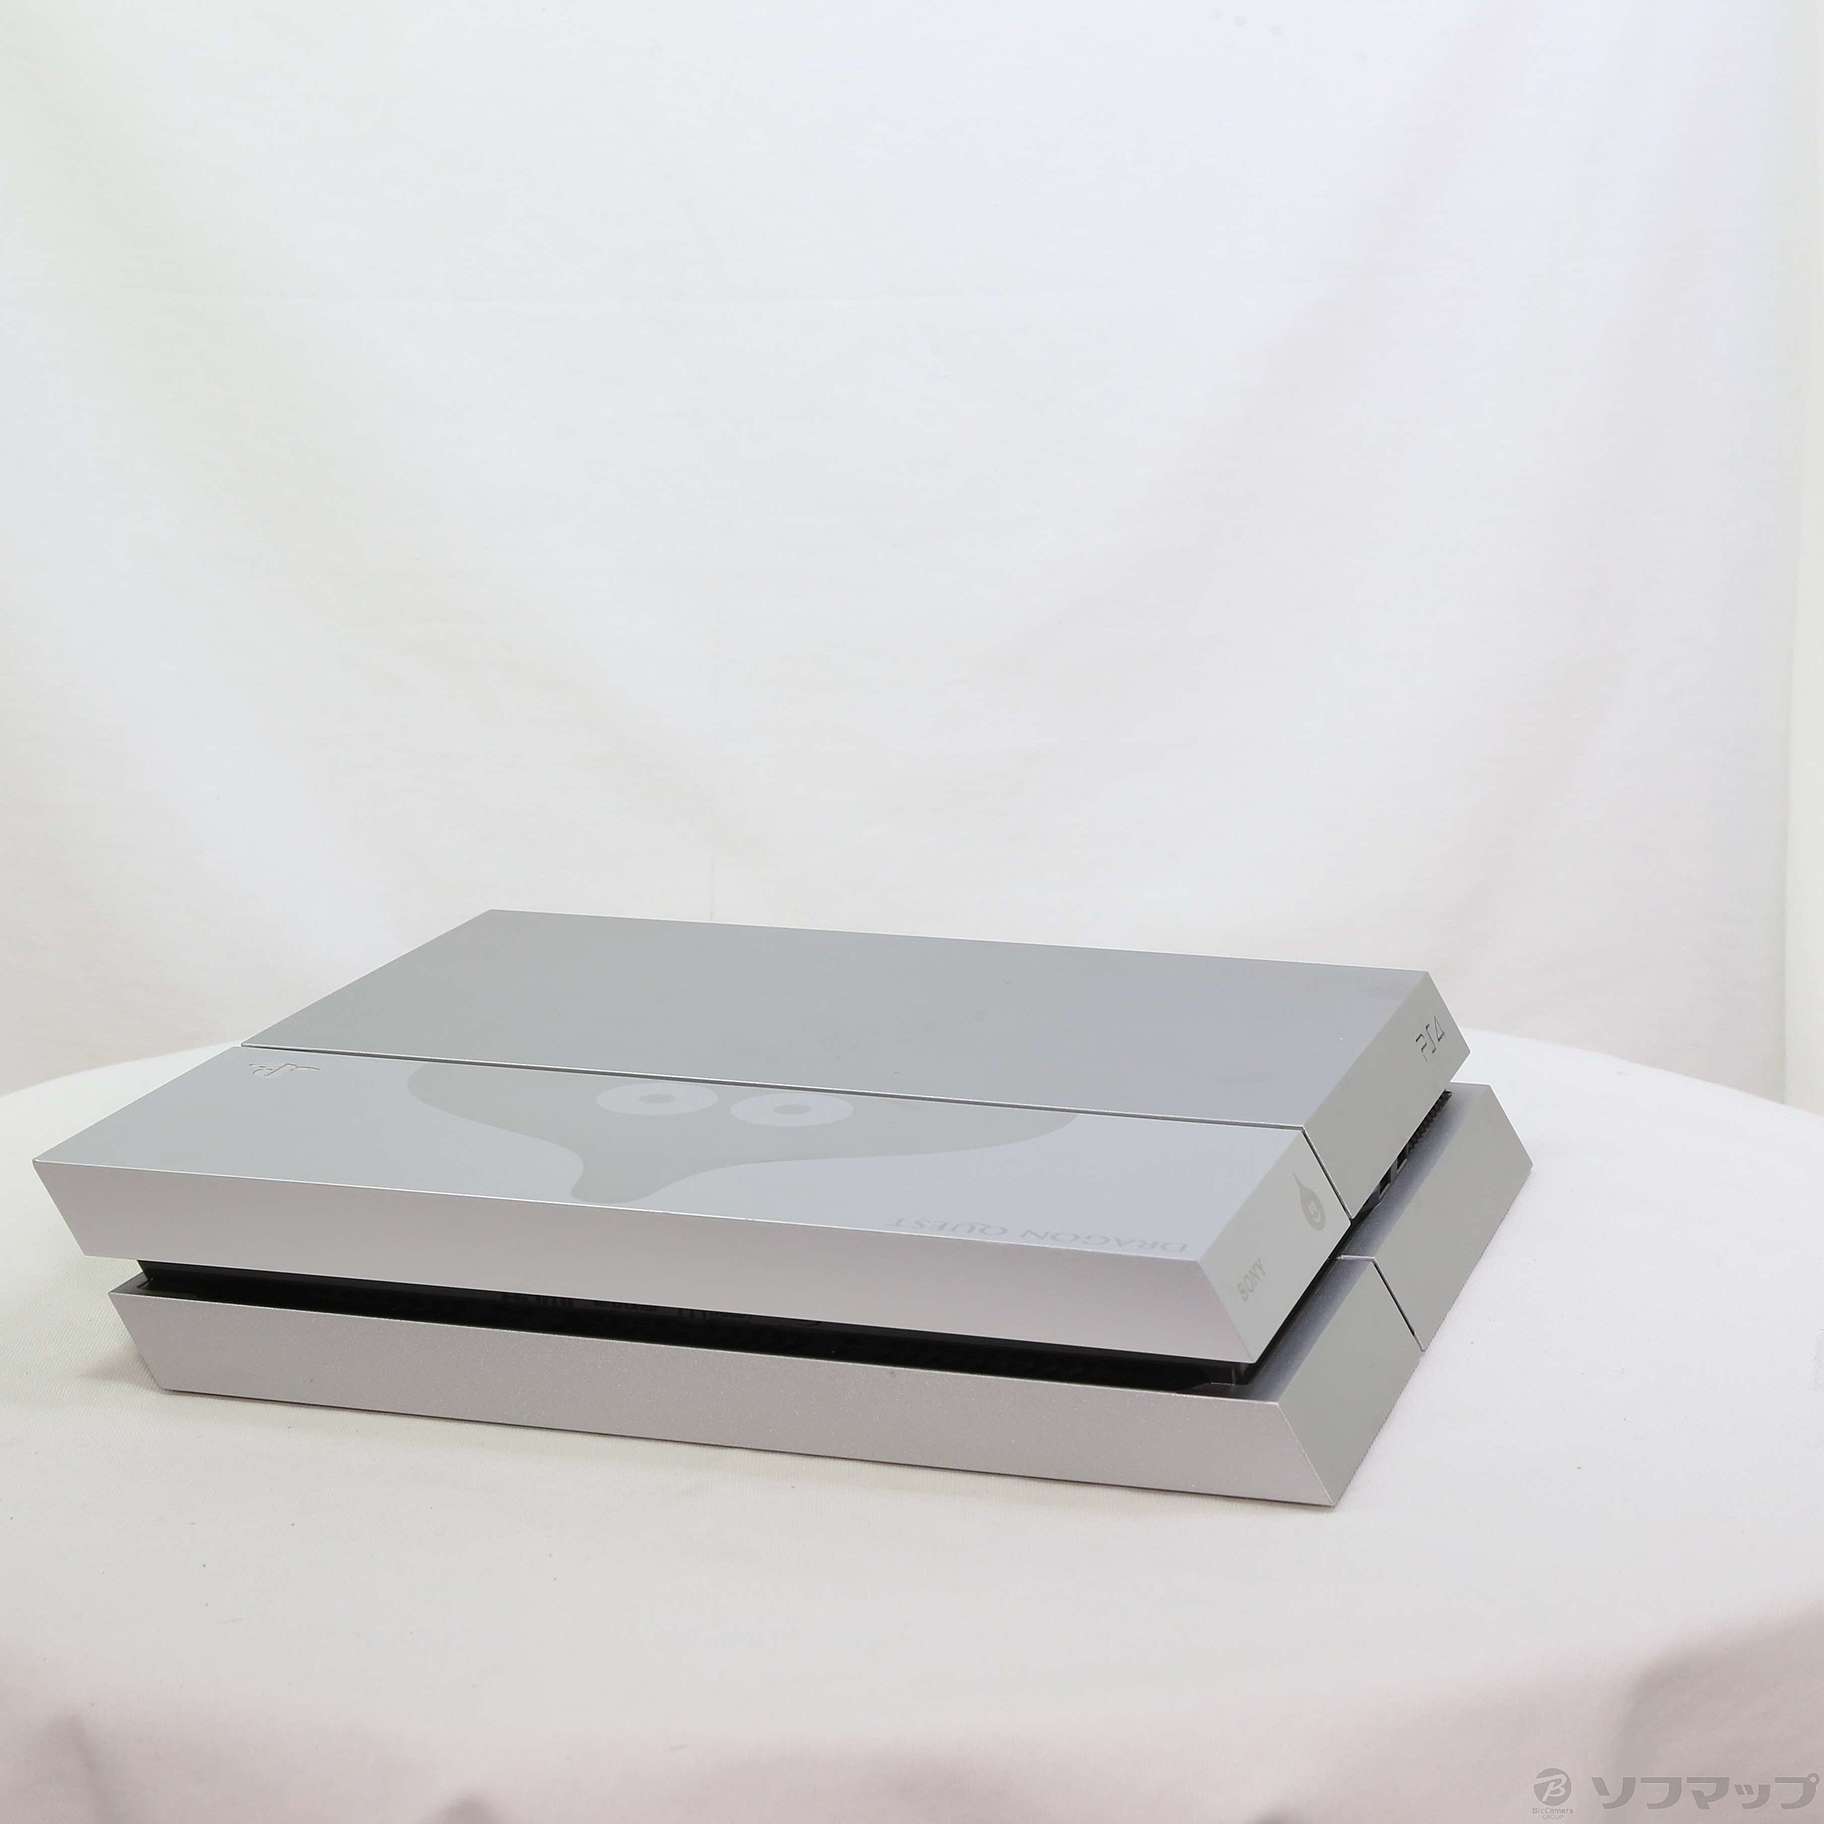 (本体)プレイステーション4 PlayStation4 ドラゴンクエスト メタルスライム エディション 500GB(CUHJ-10006)